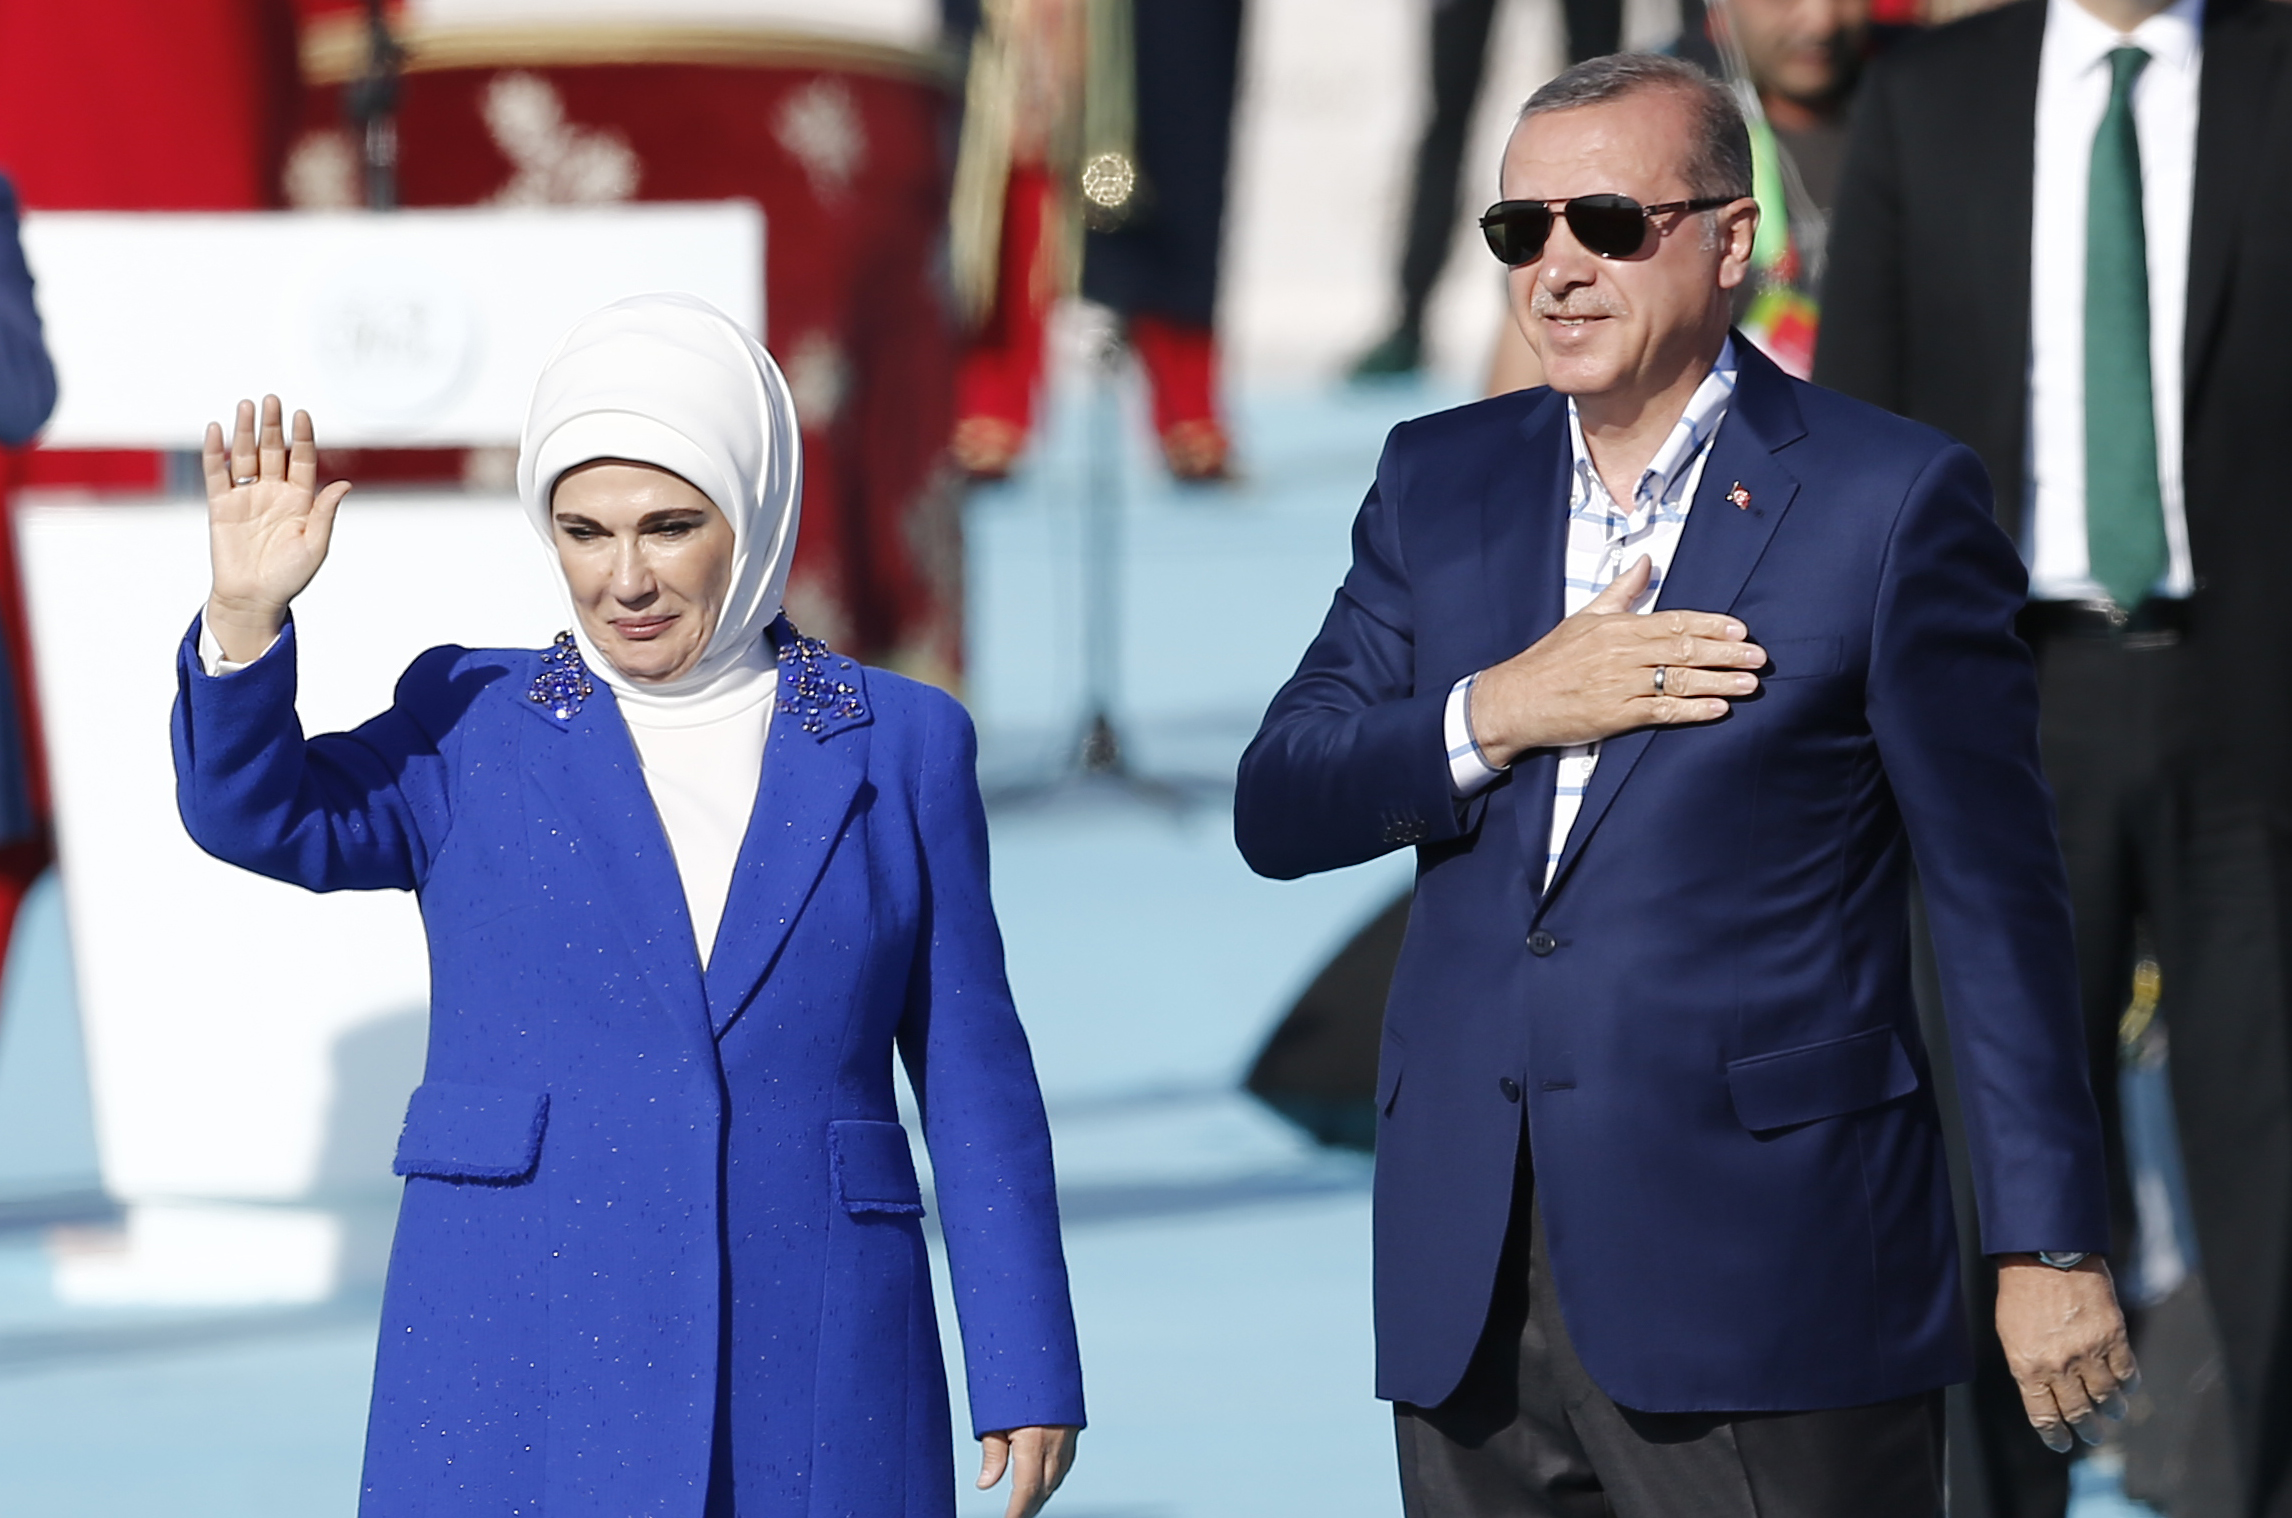 Эрдоган возраст. Эмине Эрдоган. Эсра Эрдоган. Эсра Эрдоган дочь президента Турции. Эмине Эрдоган турецкий политик.